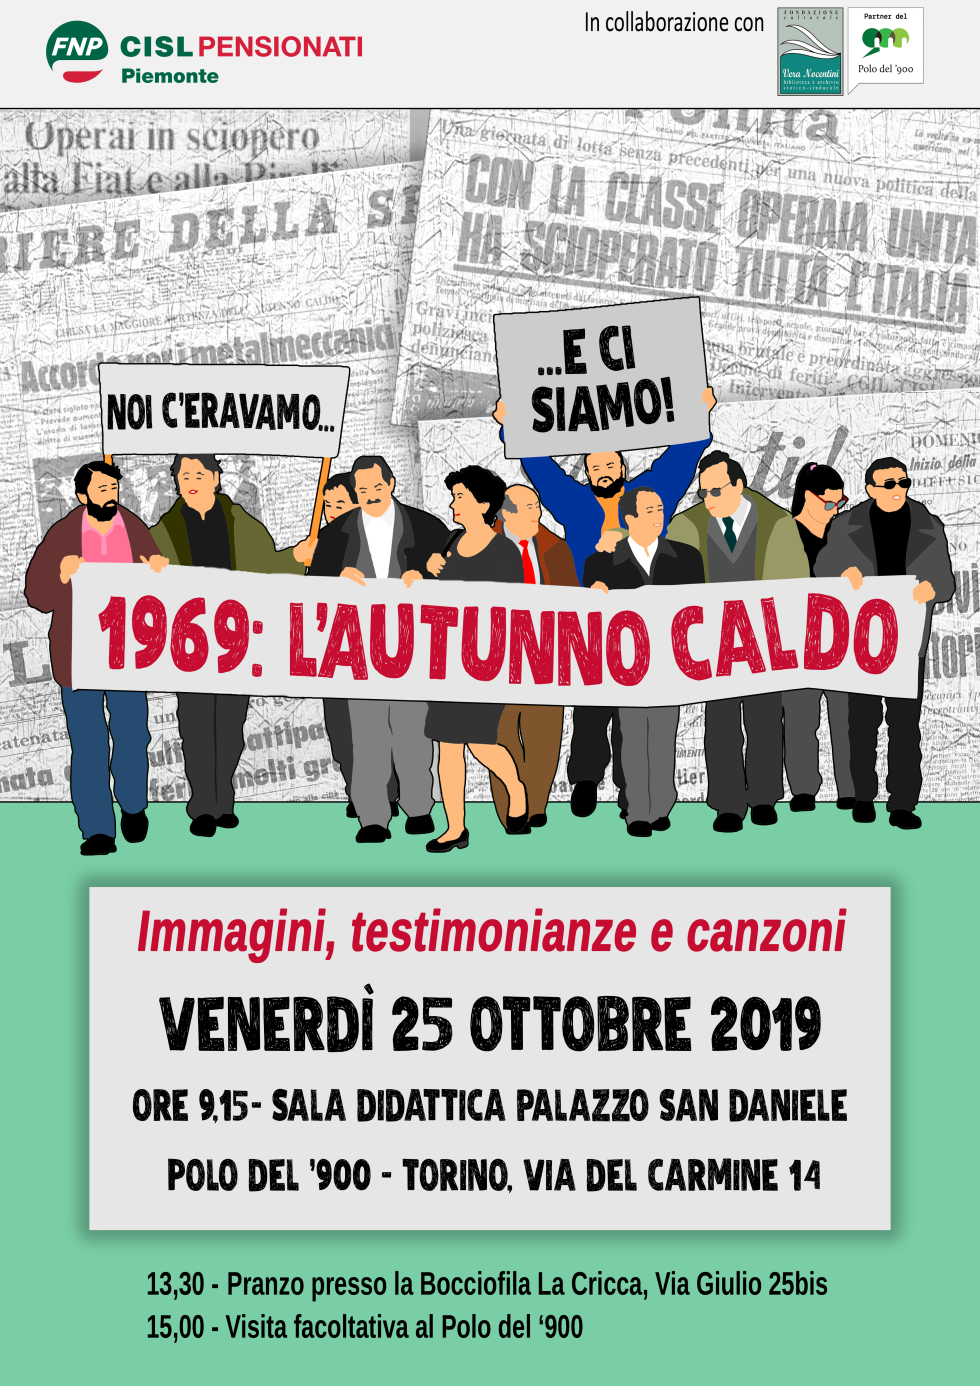 La FNP CISL Piemonte rievoca l'autunno caldo del '69